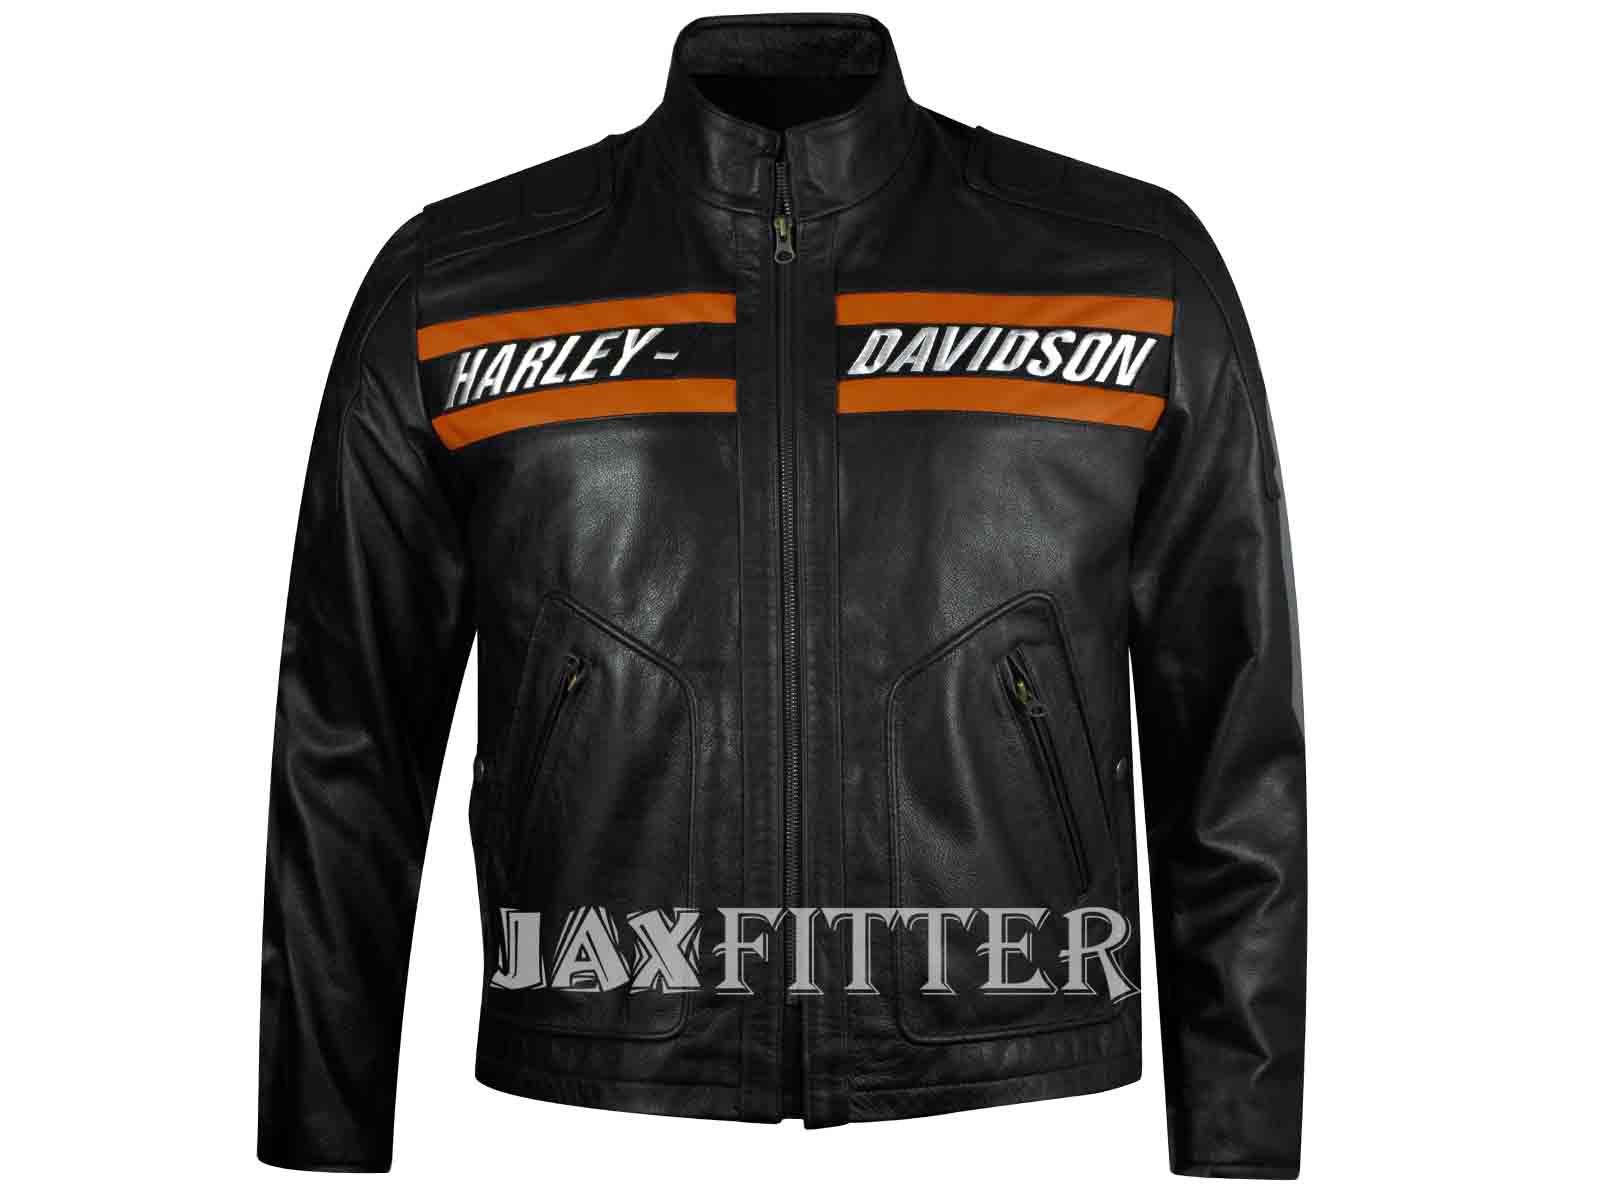 Harley Davidson Clothing Size Chart